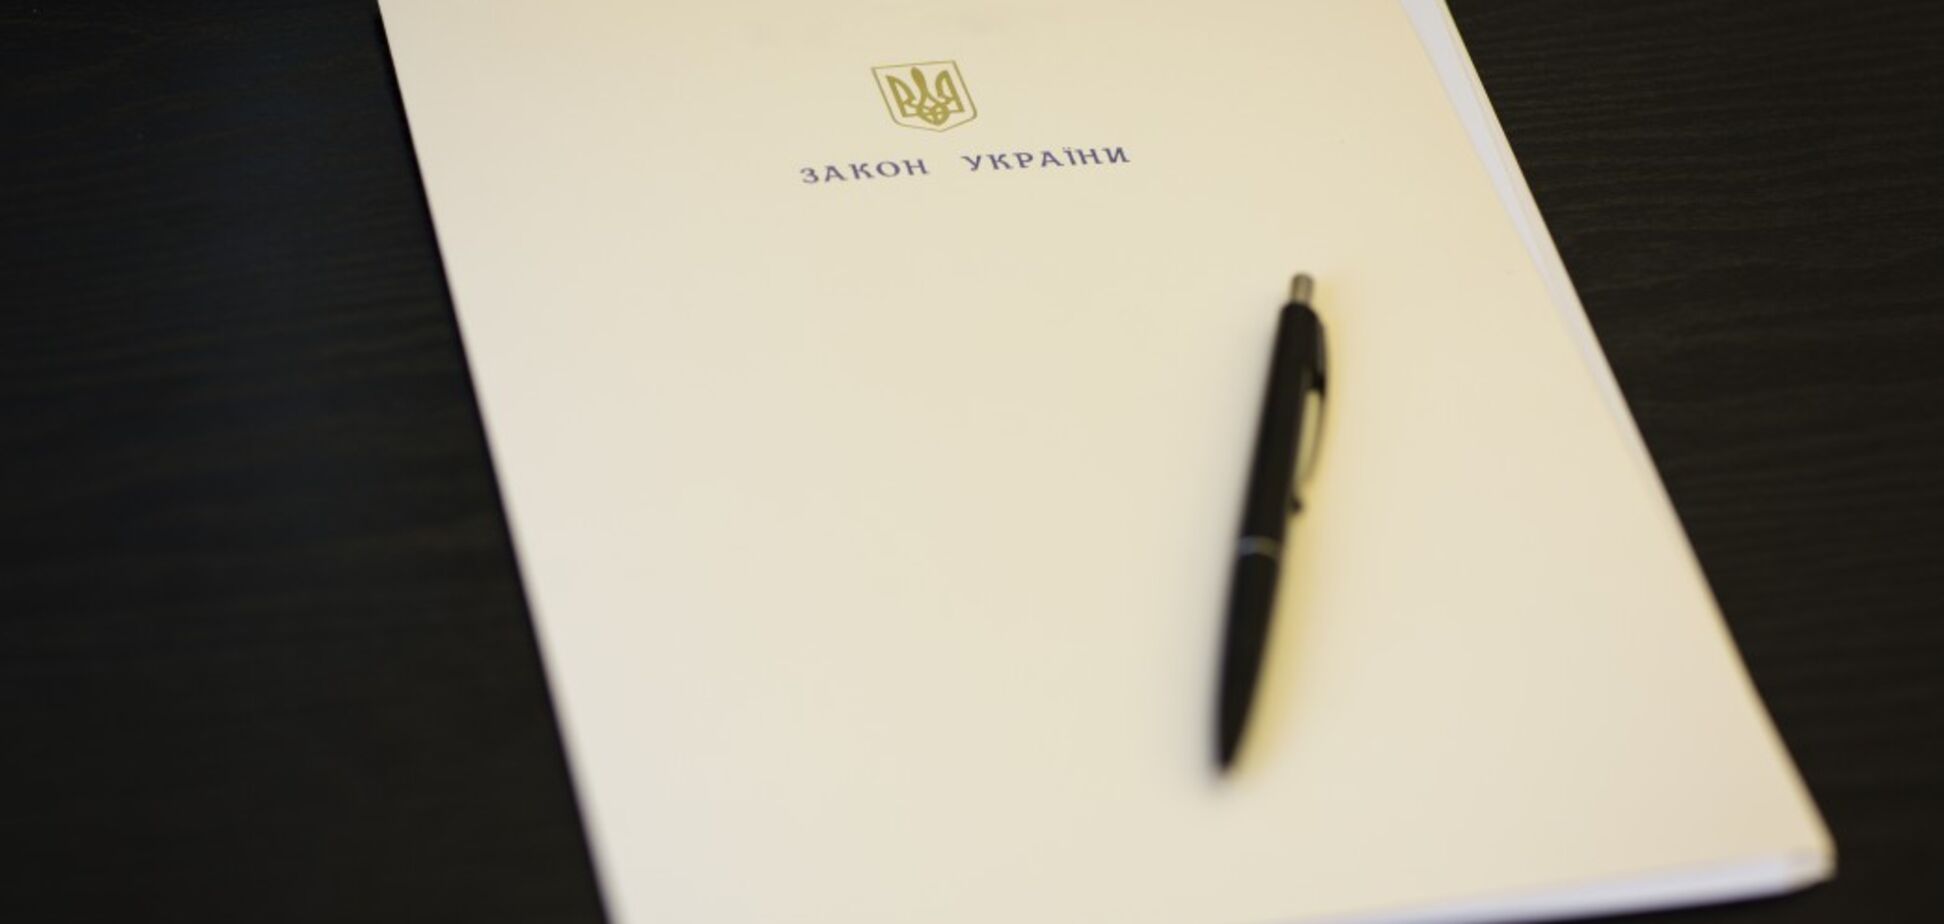 Порошенко подписал закон об усилении границы: что это значит